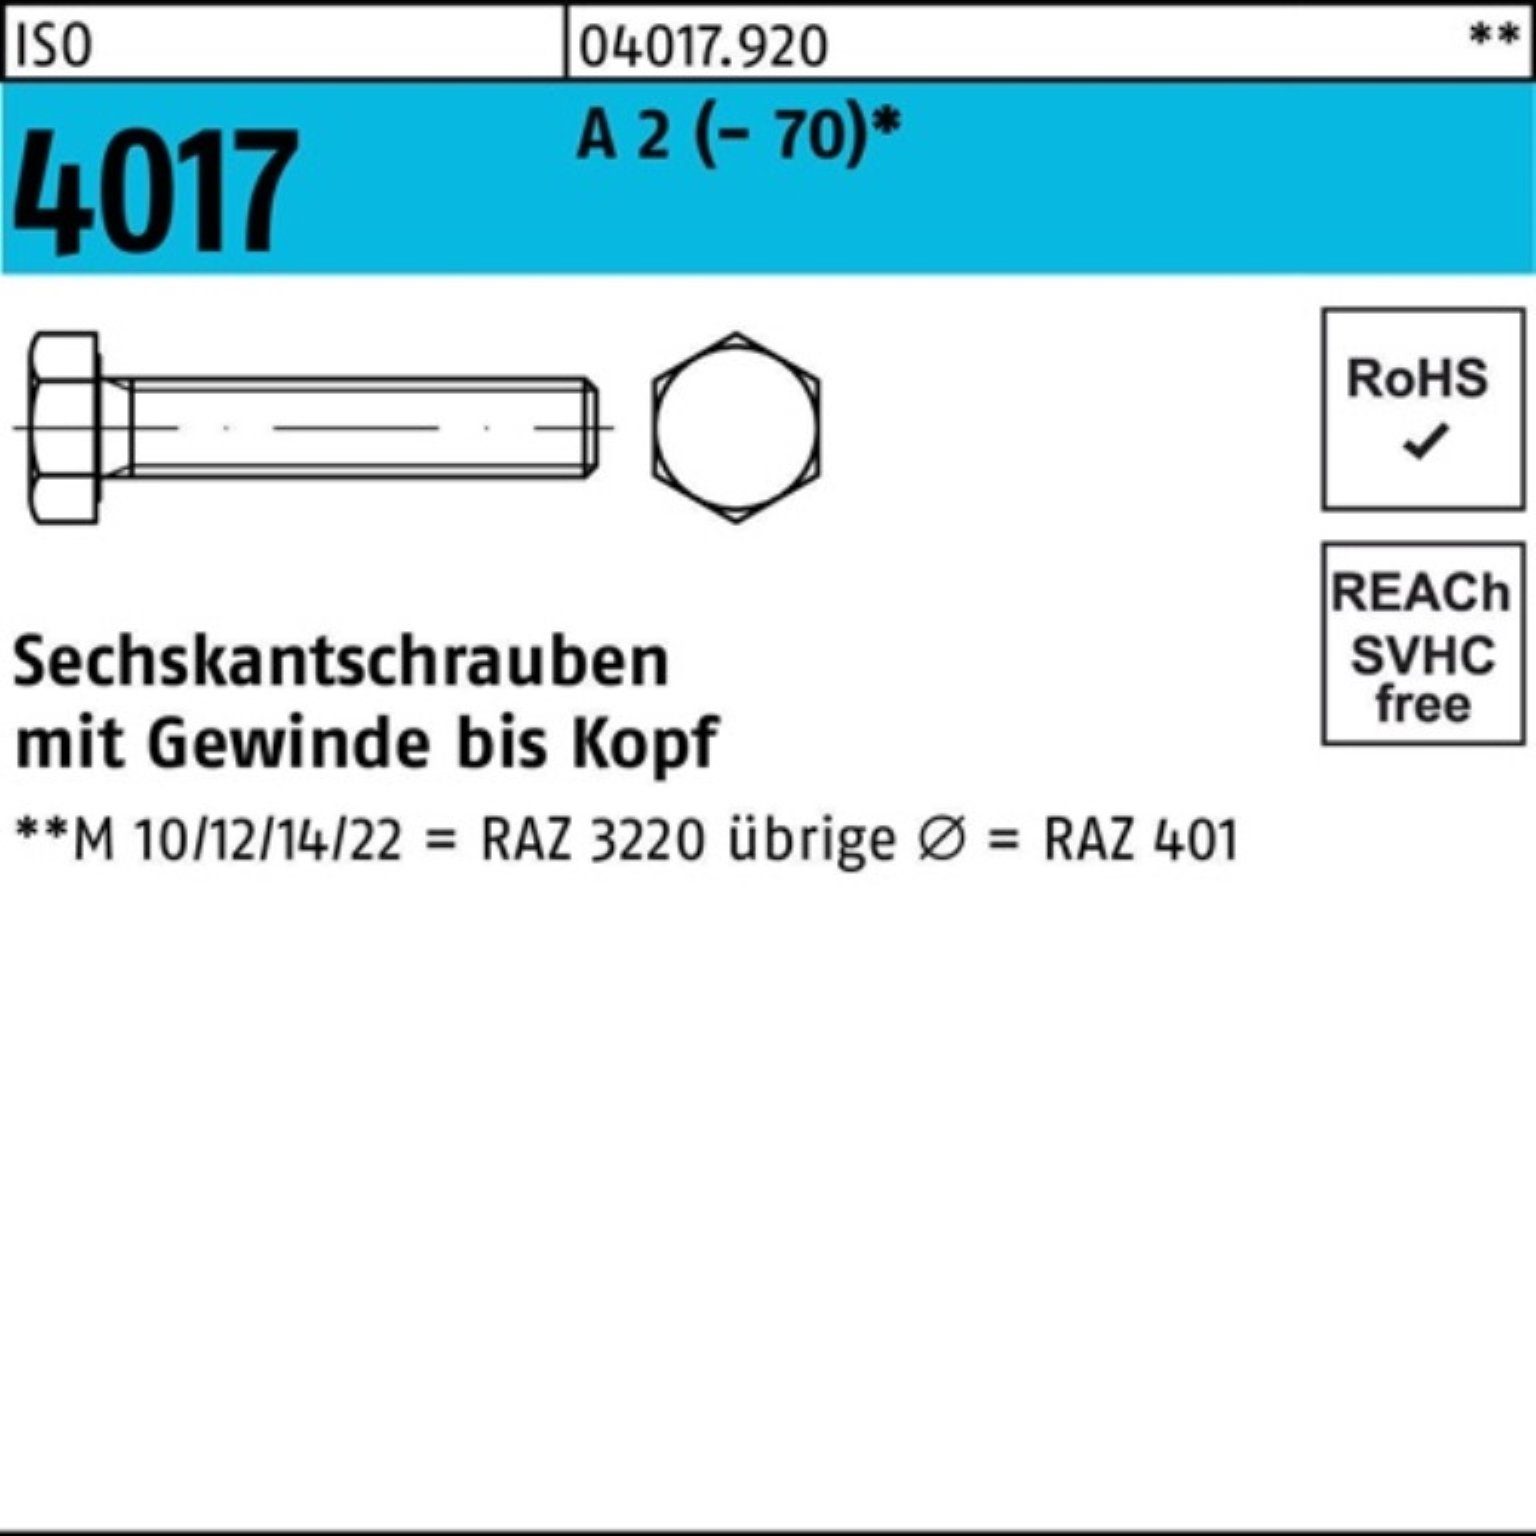 Bufab Sechskantschraube 100er 80 2 A Stück M22x Sechskantschraube 1 (70) VG 4017 ISO I Pack